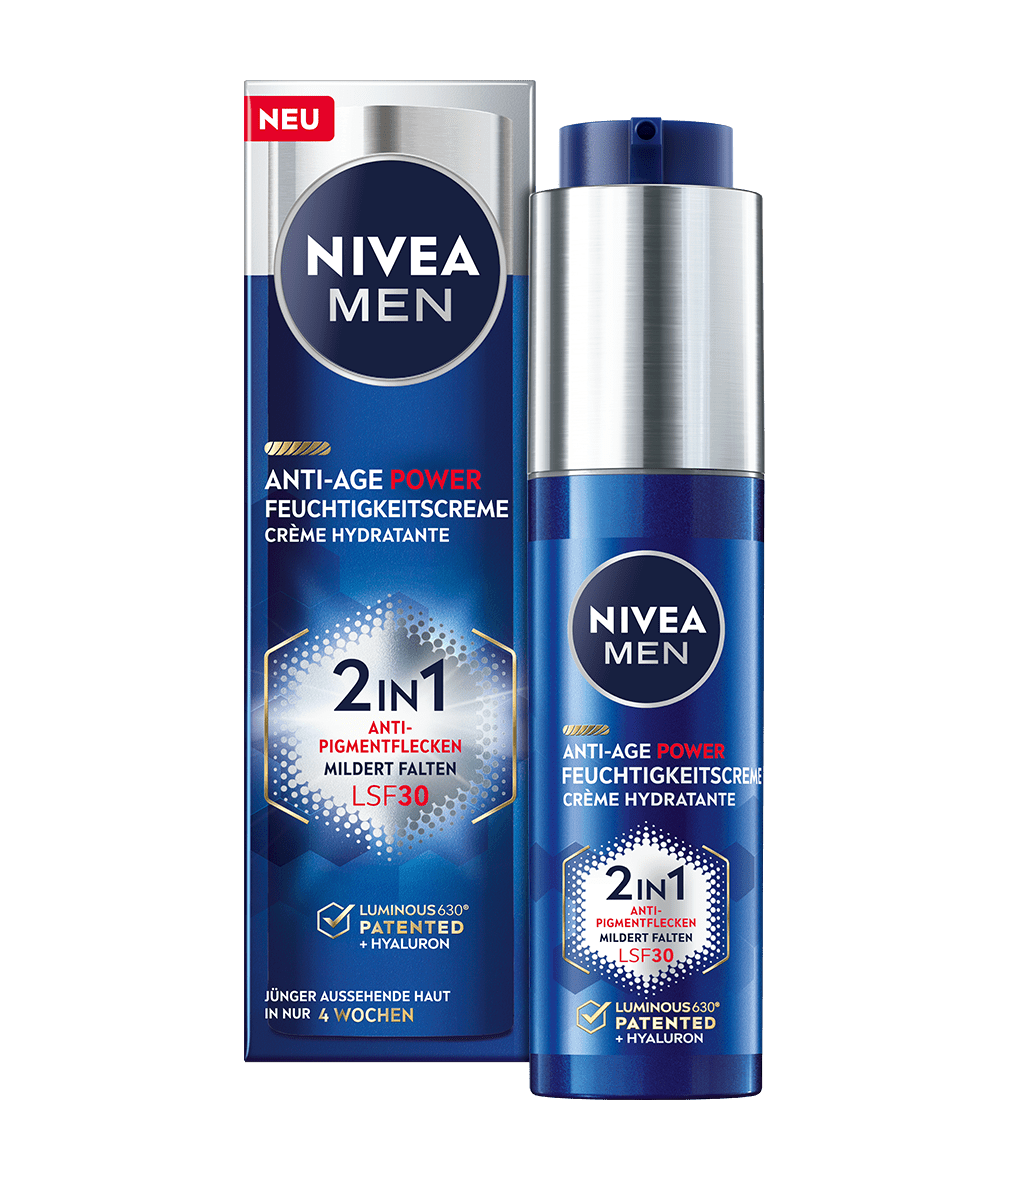 NIVEA MEN Anti-Age Power Feuchtigkeitscreme 2in1_50ml_Spender